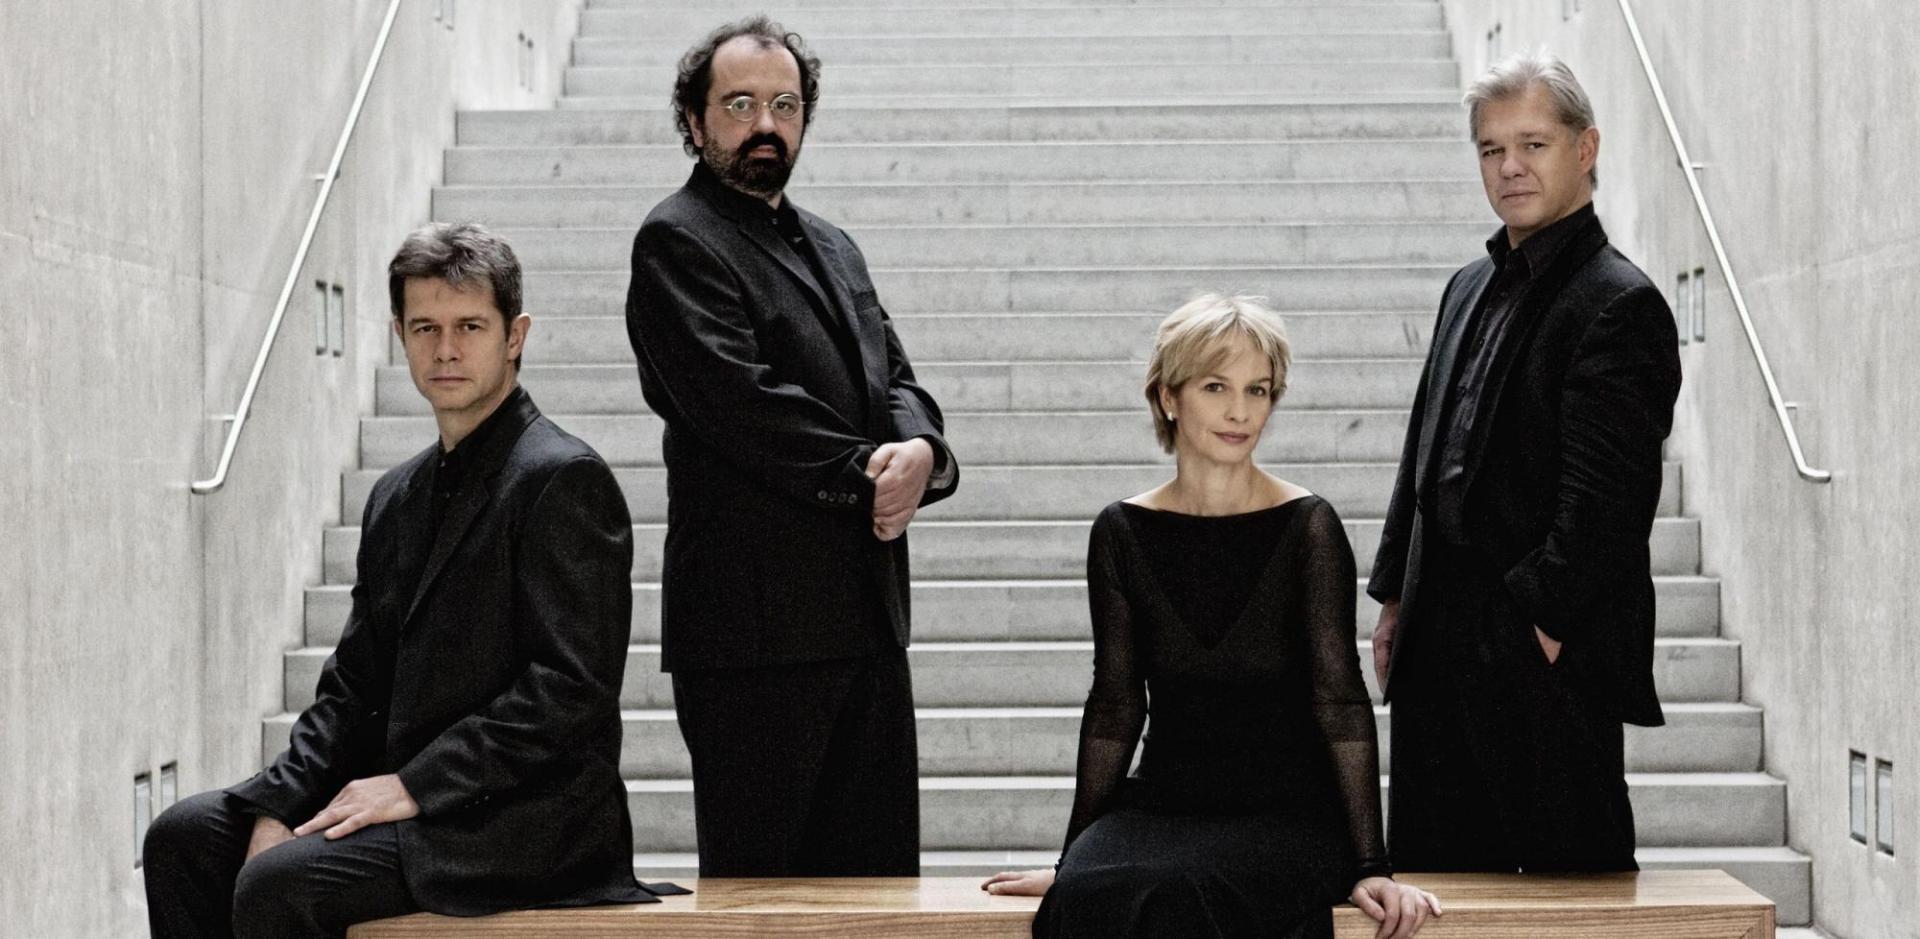 Das Streichquartett Hagen Quartett in Schwarz gekleidet